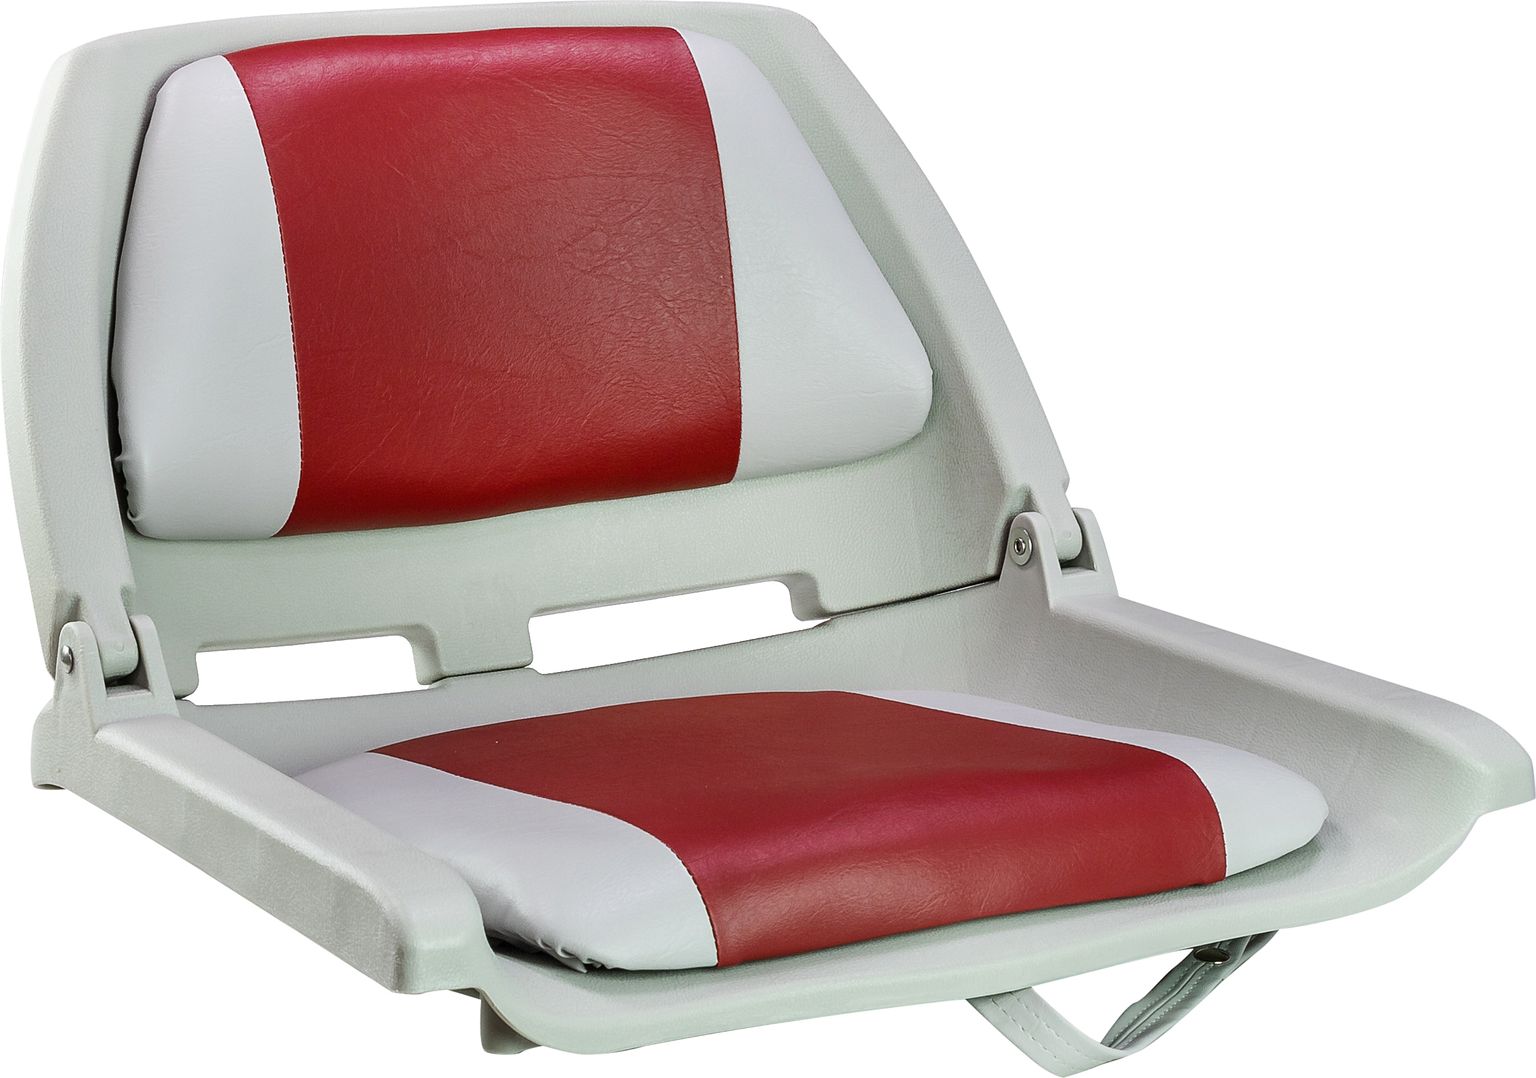 Кресло мягкое складное, обивка винил, цвет серый/красный, Marine Rocket 75109GR-MR кресло мягкое складное камуфляж камыш marine rocket 75107camo99 mr